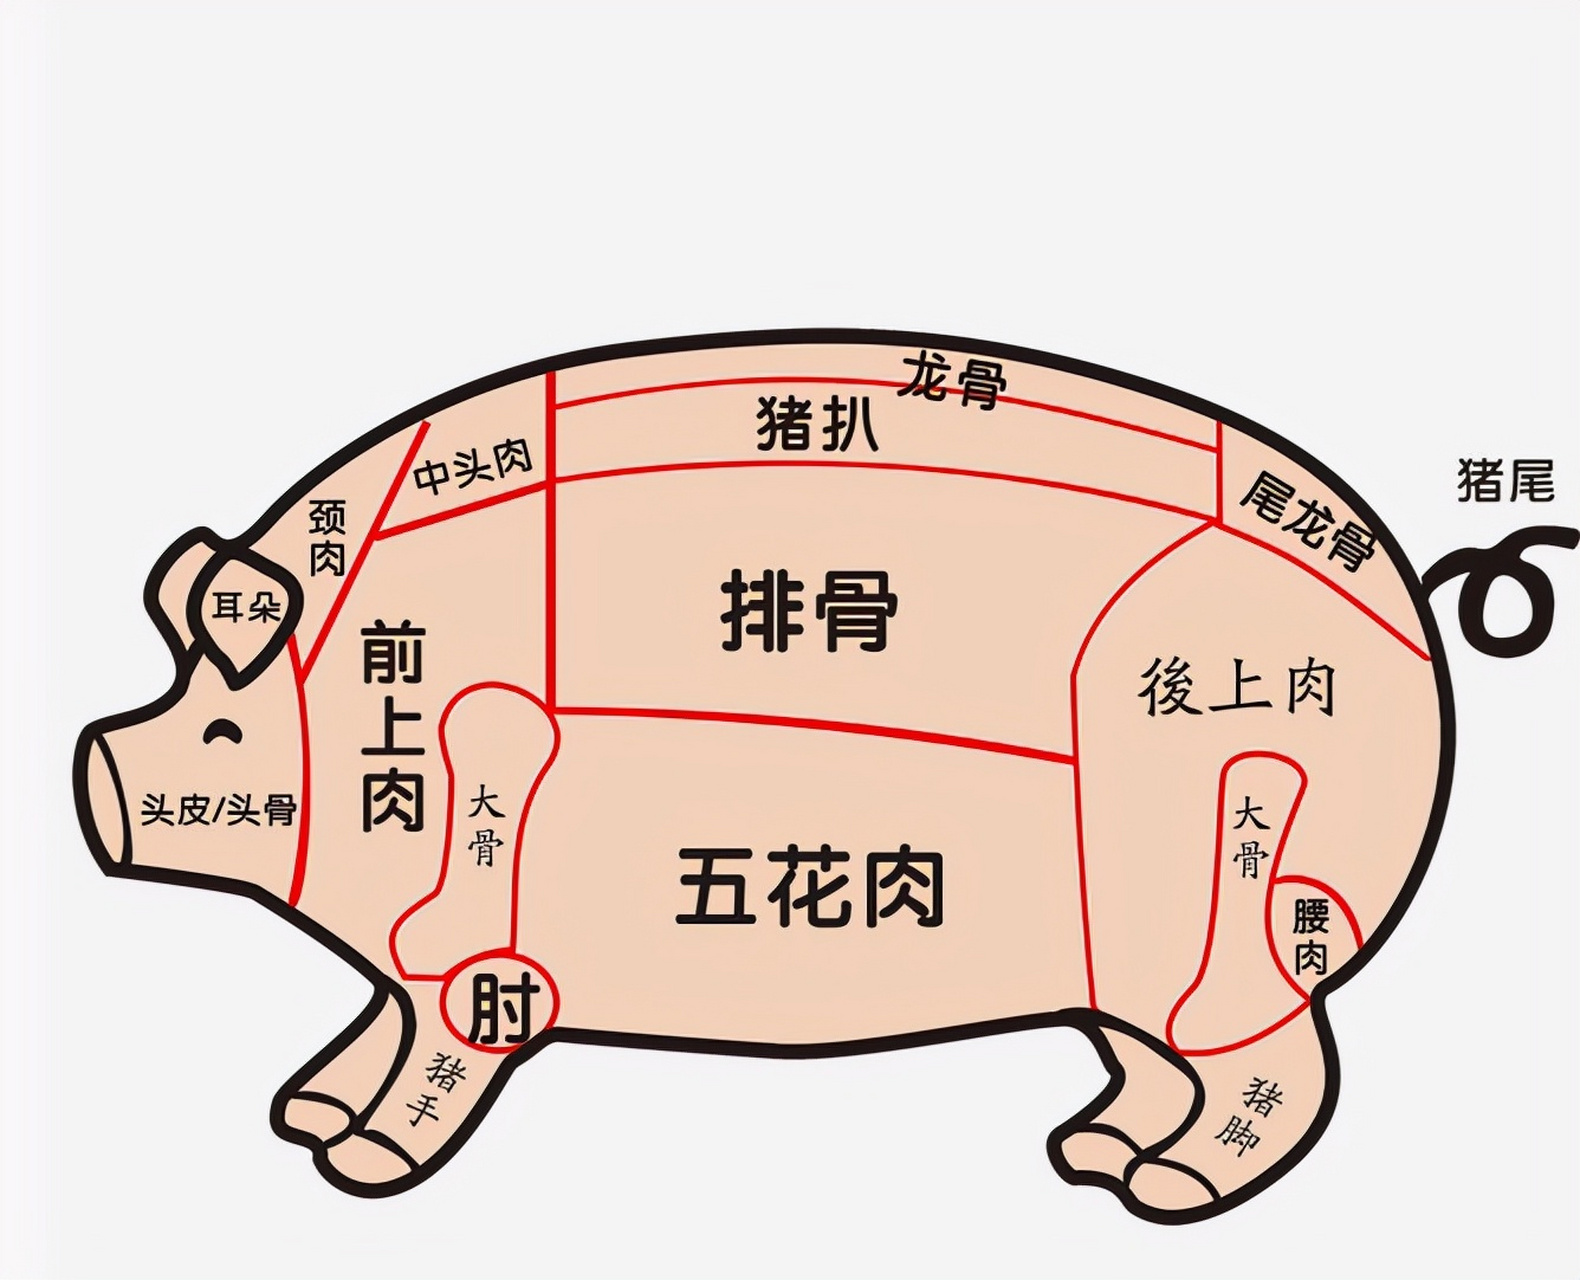 除了内脏外,如下图所示:由龙骨,猪扒,排骨,五花肉,前上肉,后上肉,2根